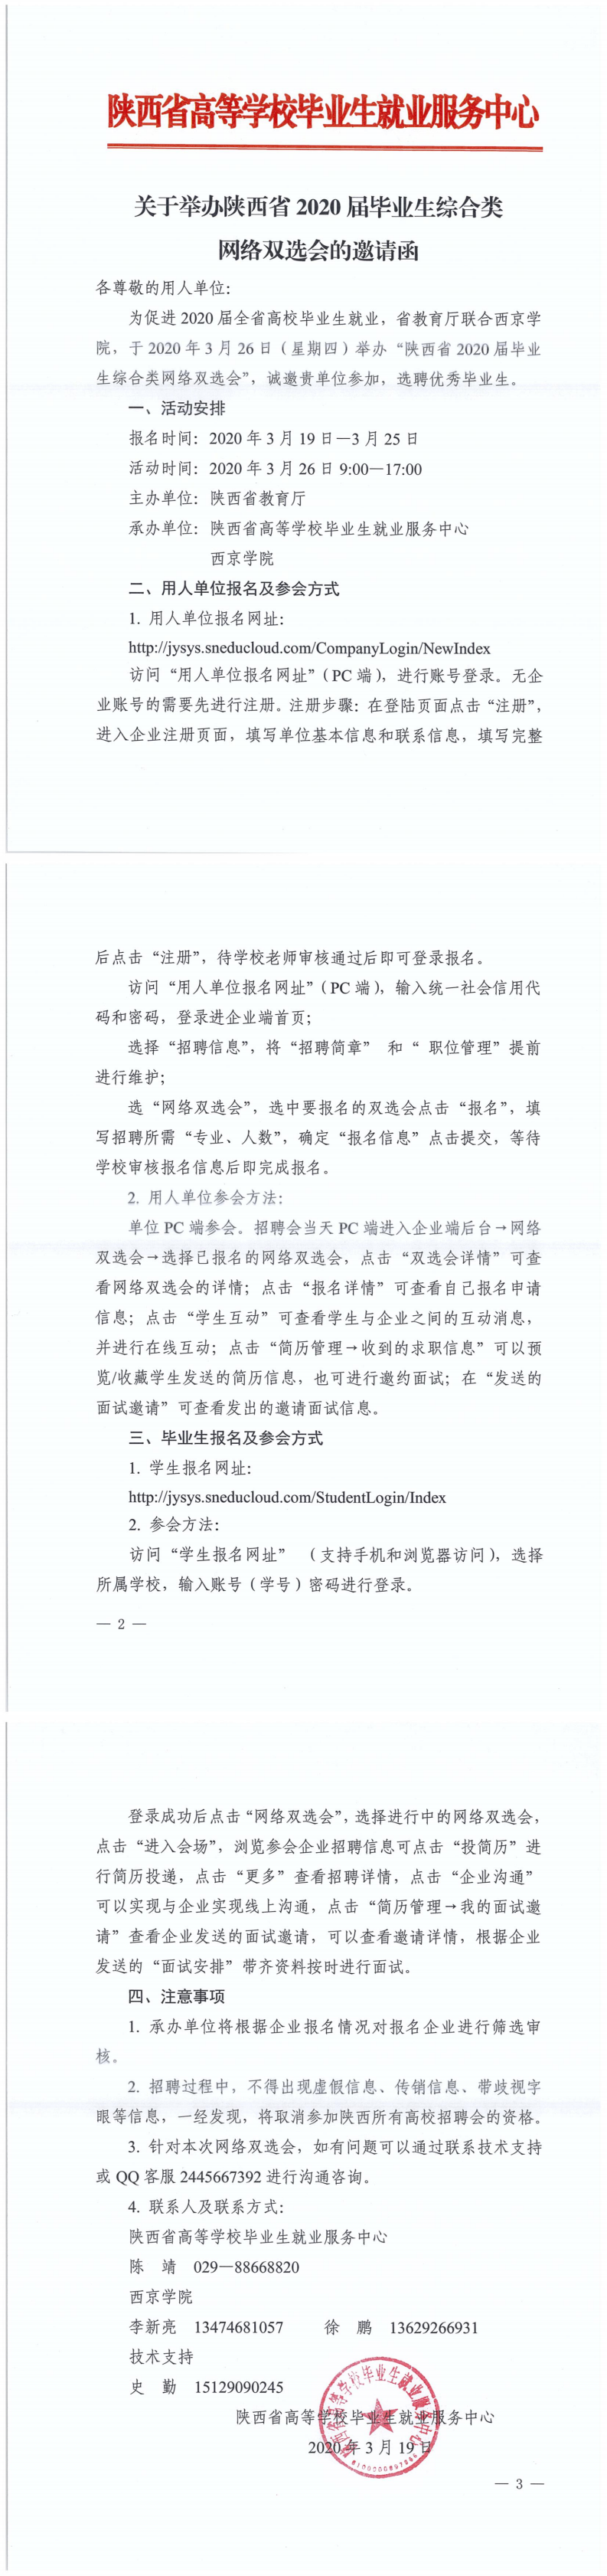 关于举办陕西省2020届毕业生综合类网络双选会的邀请函_0.png